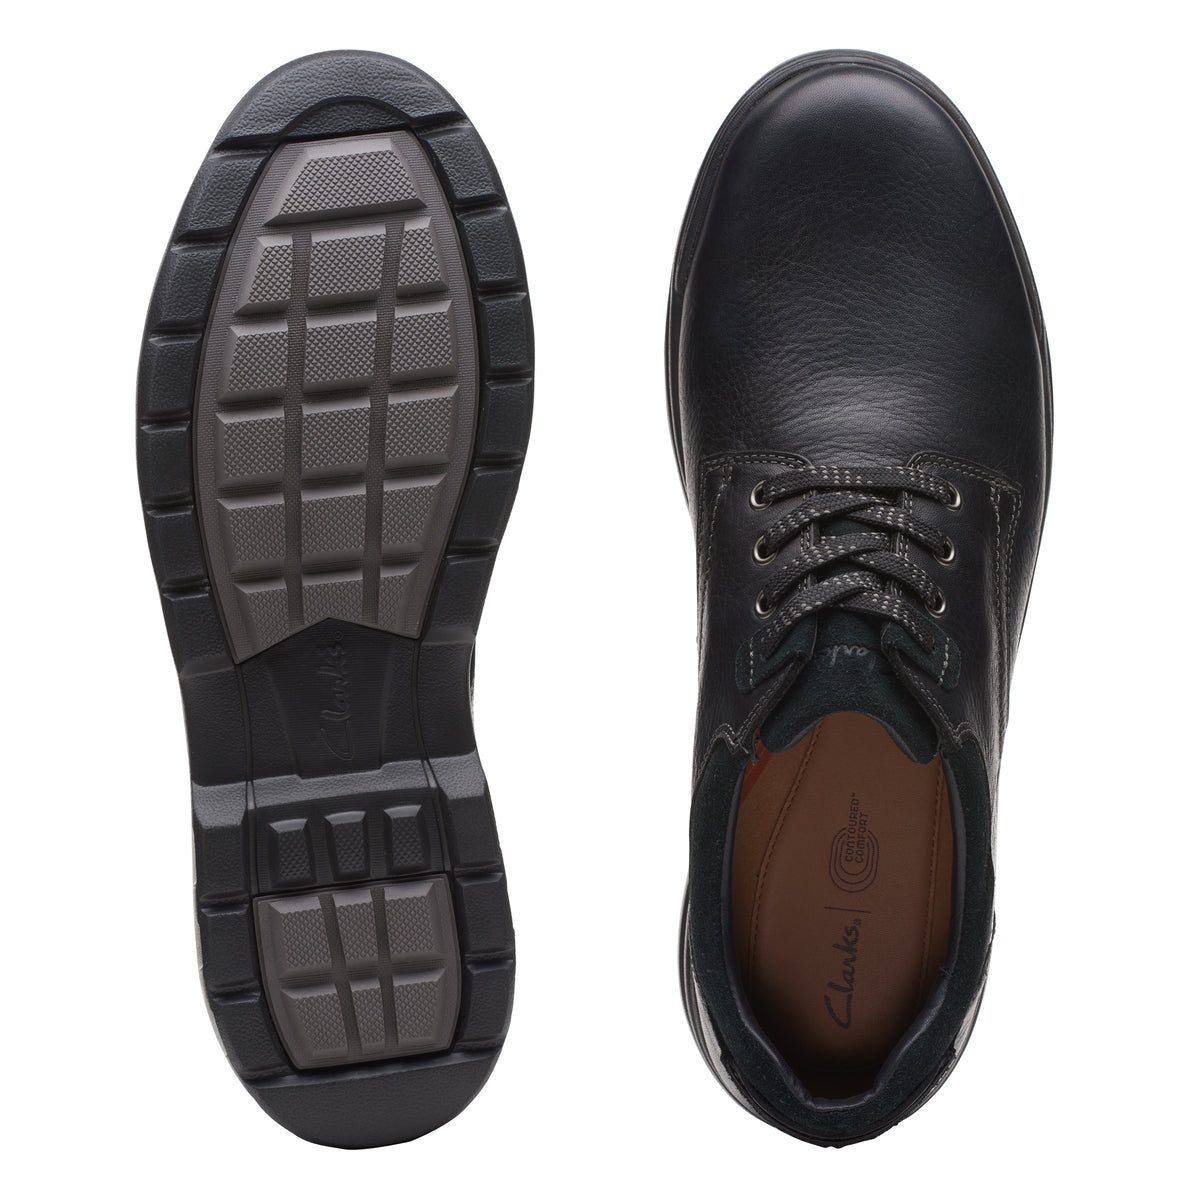 Zapatos Derby De La Marca Clarks Para Hombre Modelo Rockie Logtx Black Leather En Color Negro